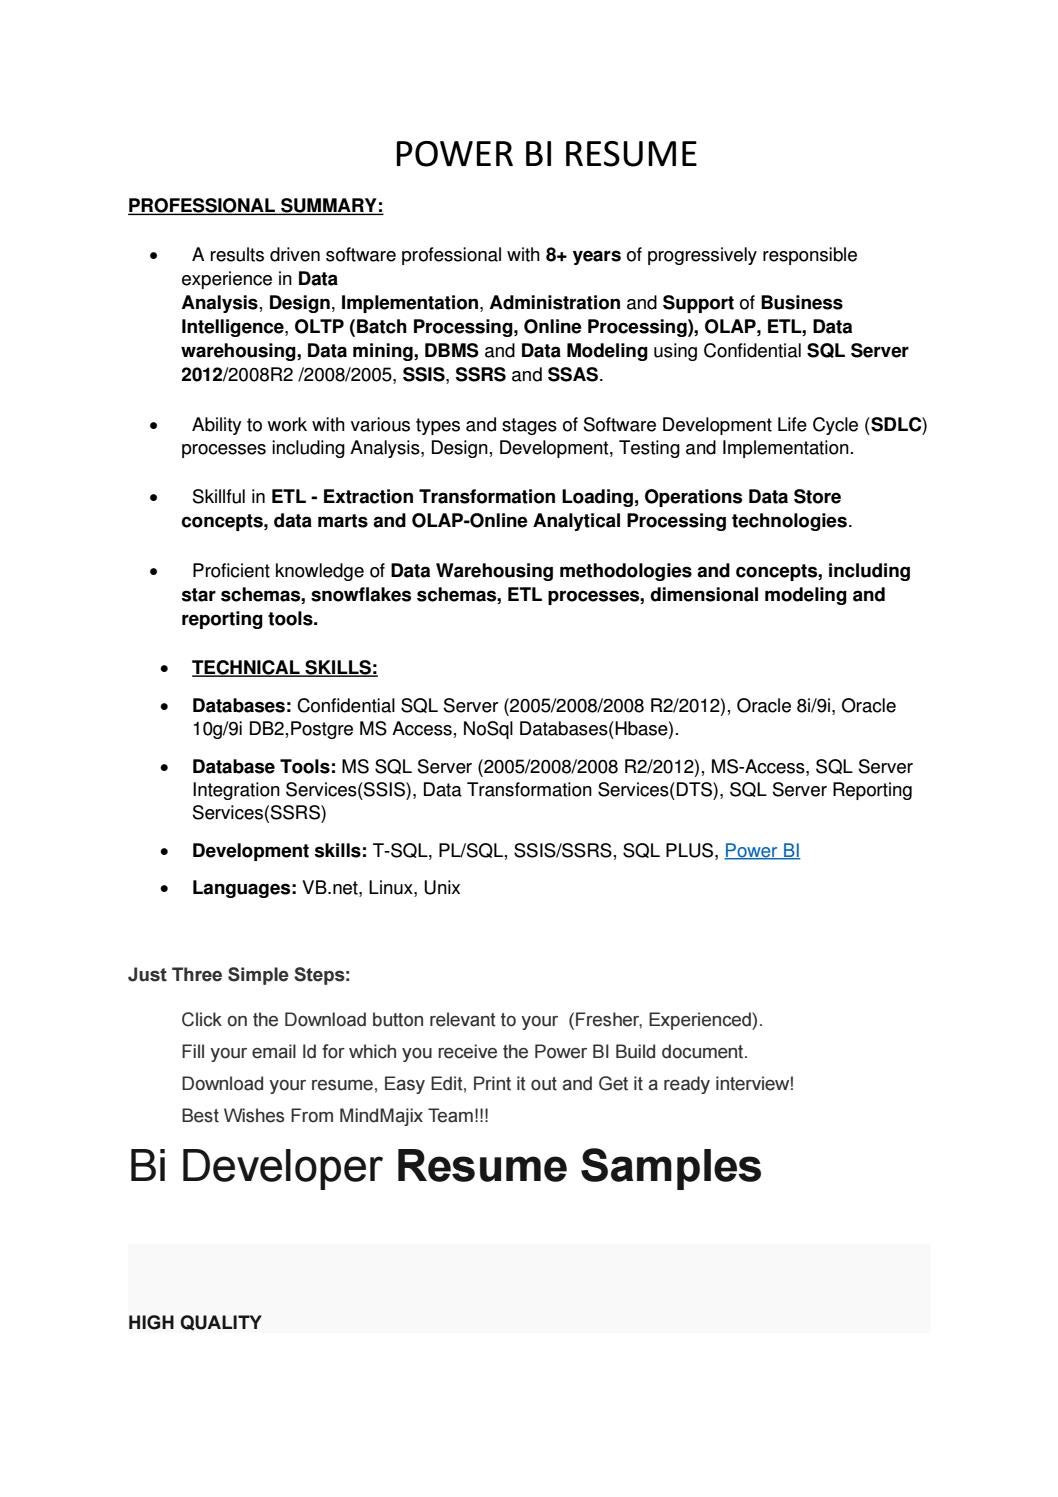 Sample Resume for Beginner Bi Developer Power Bi Resume by Lillydass12 – issuu